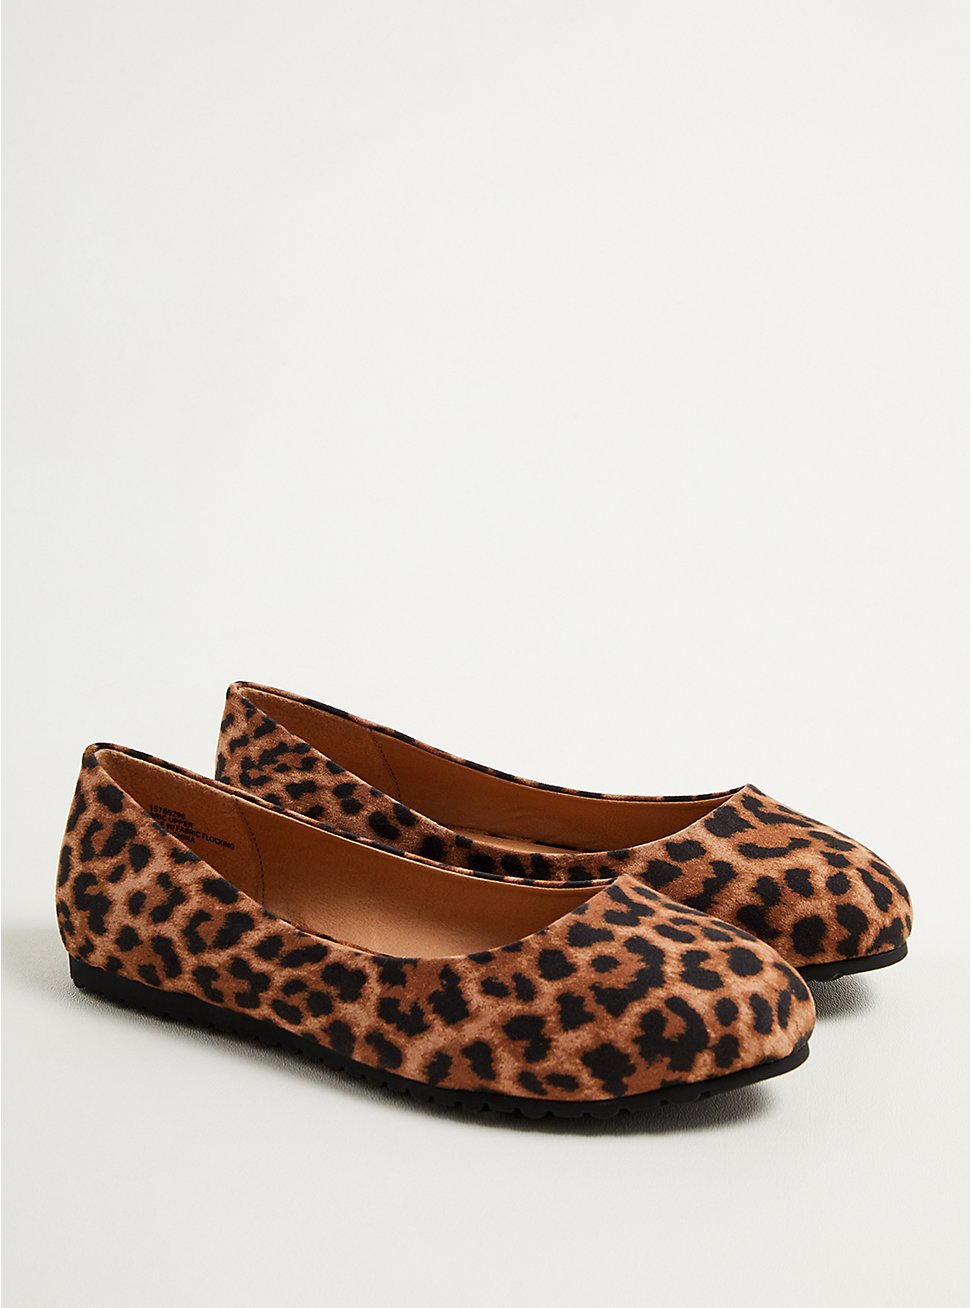 Almond Toe Flat - Leopard Faux Suede (WW), LEOPARD, hi-res